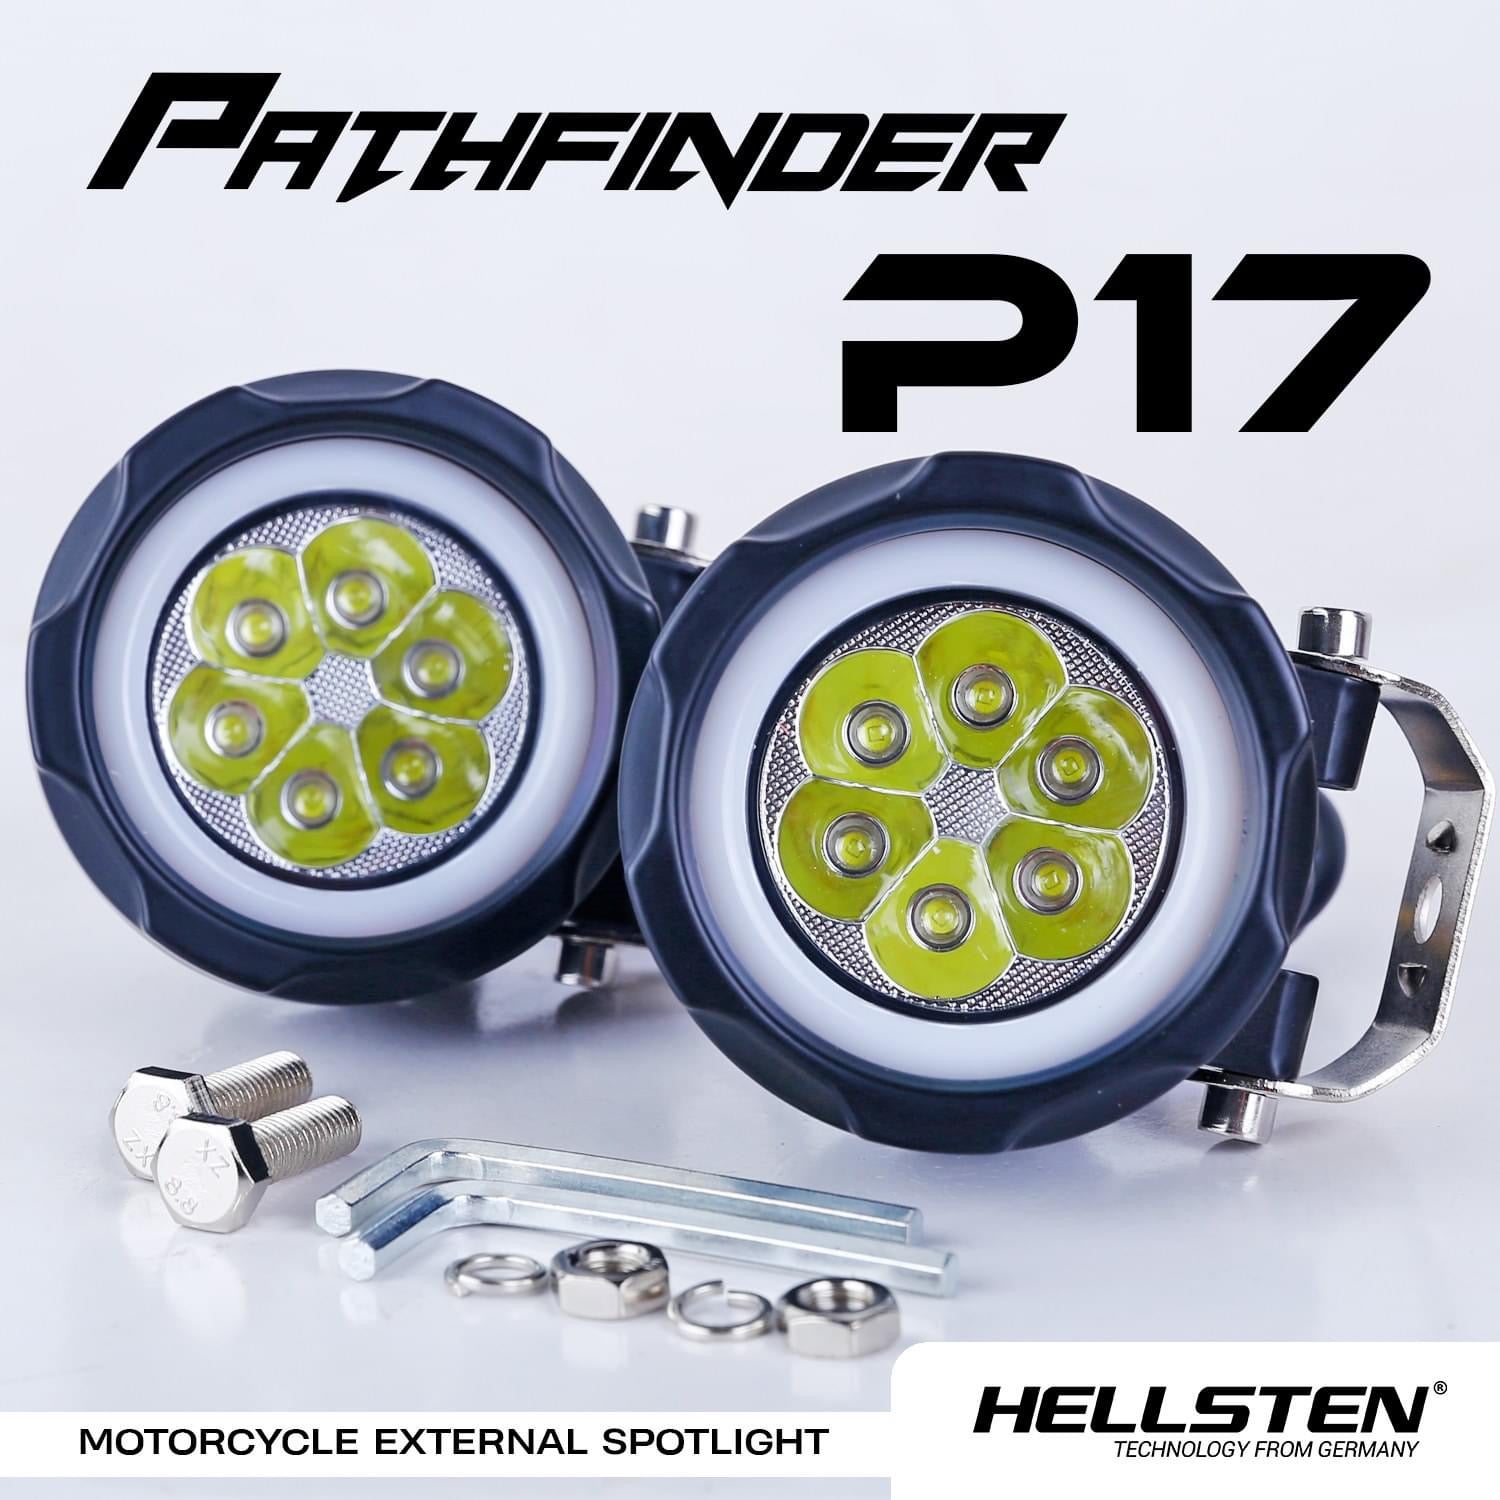 Hellsten P17 PATHFINDER - Hellsten LED Philippines